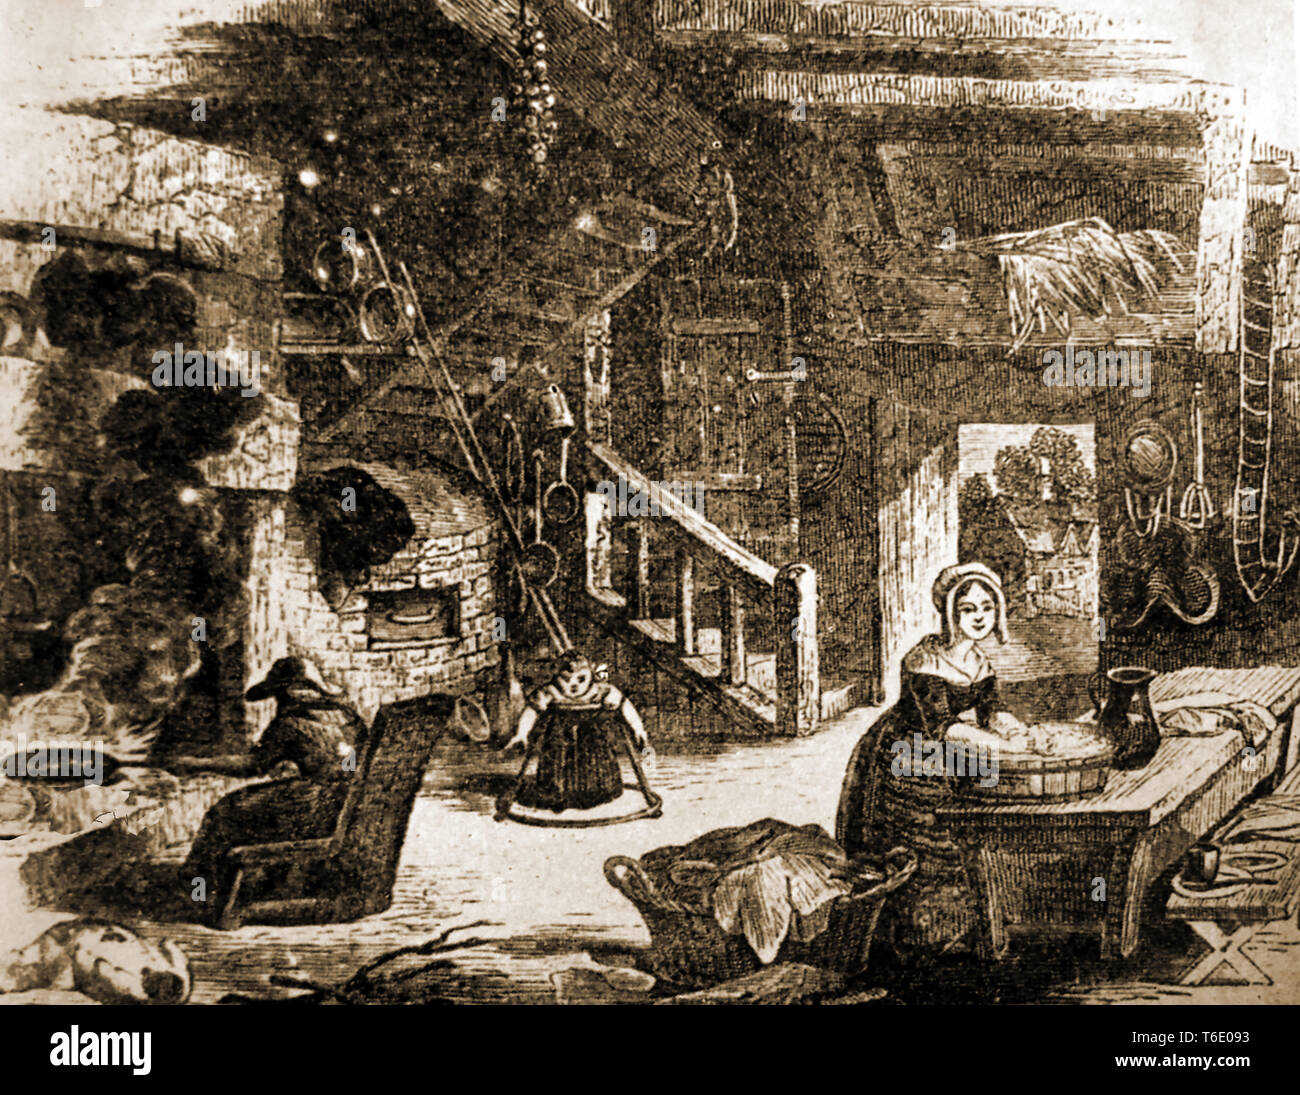 Ein Kupferstich aus dem 17. Jahrhundert Küche Szene (evtl. in einer Taverne oder Coaching Inn) zeigt eine alte Frau Kochen über dem offenen Feuer, ein Kind lernen in einer Lauflernhilfe zu gehen, eine Hausfrau Waschmaschine in einem hölzernen Whirlpool und einem Heuboden Stockfoto